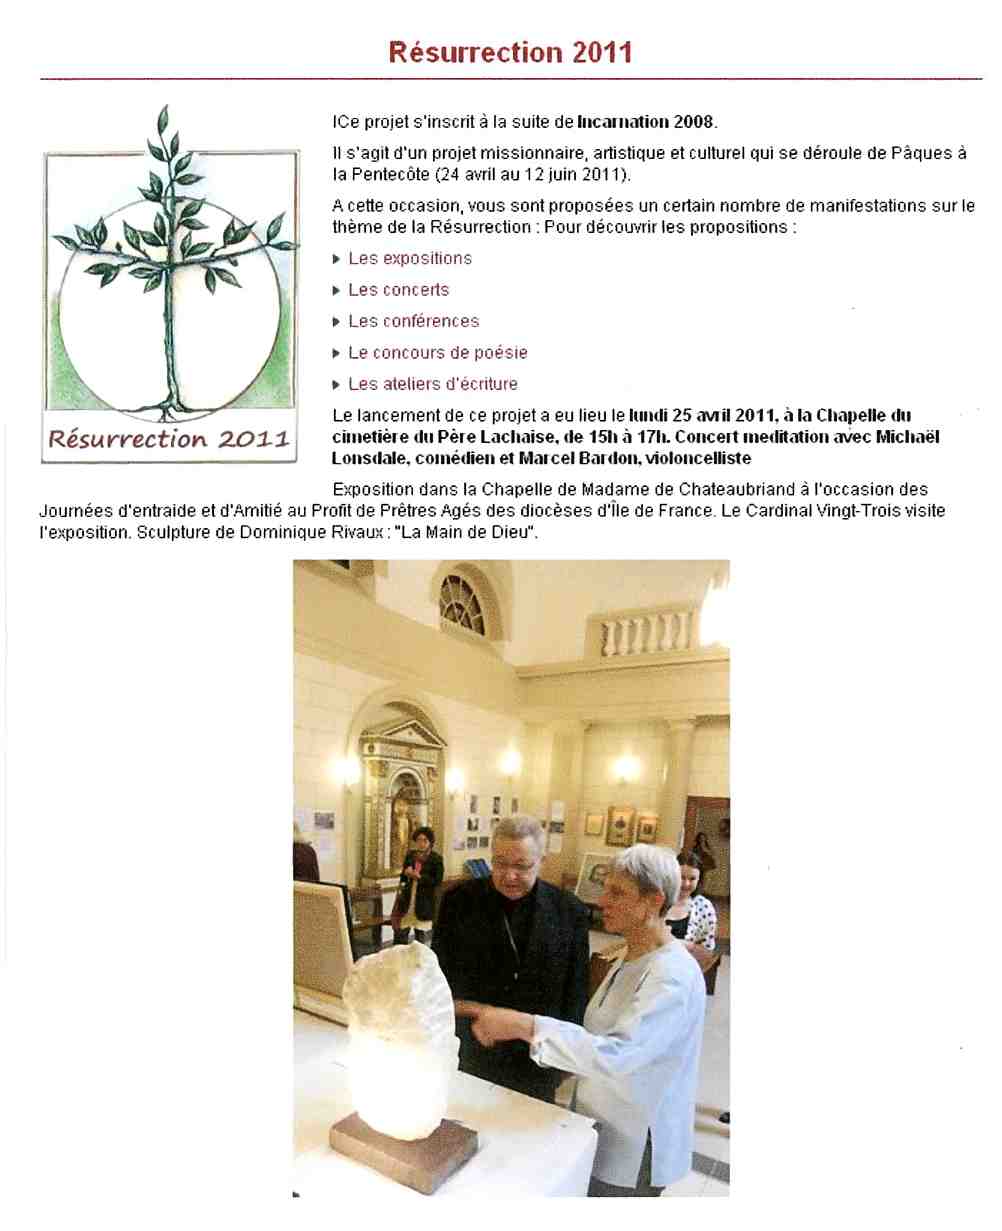 Article "Site Évêché" - expo en la Chapelle de Mme Chateaubriand - "La Résurrection" en 2011